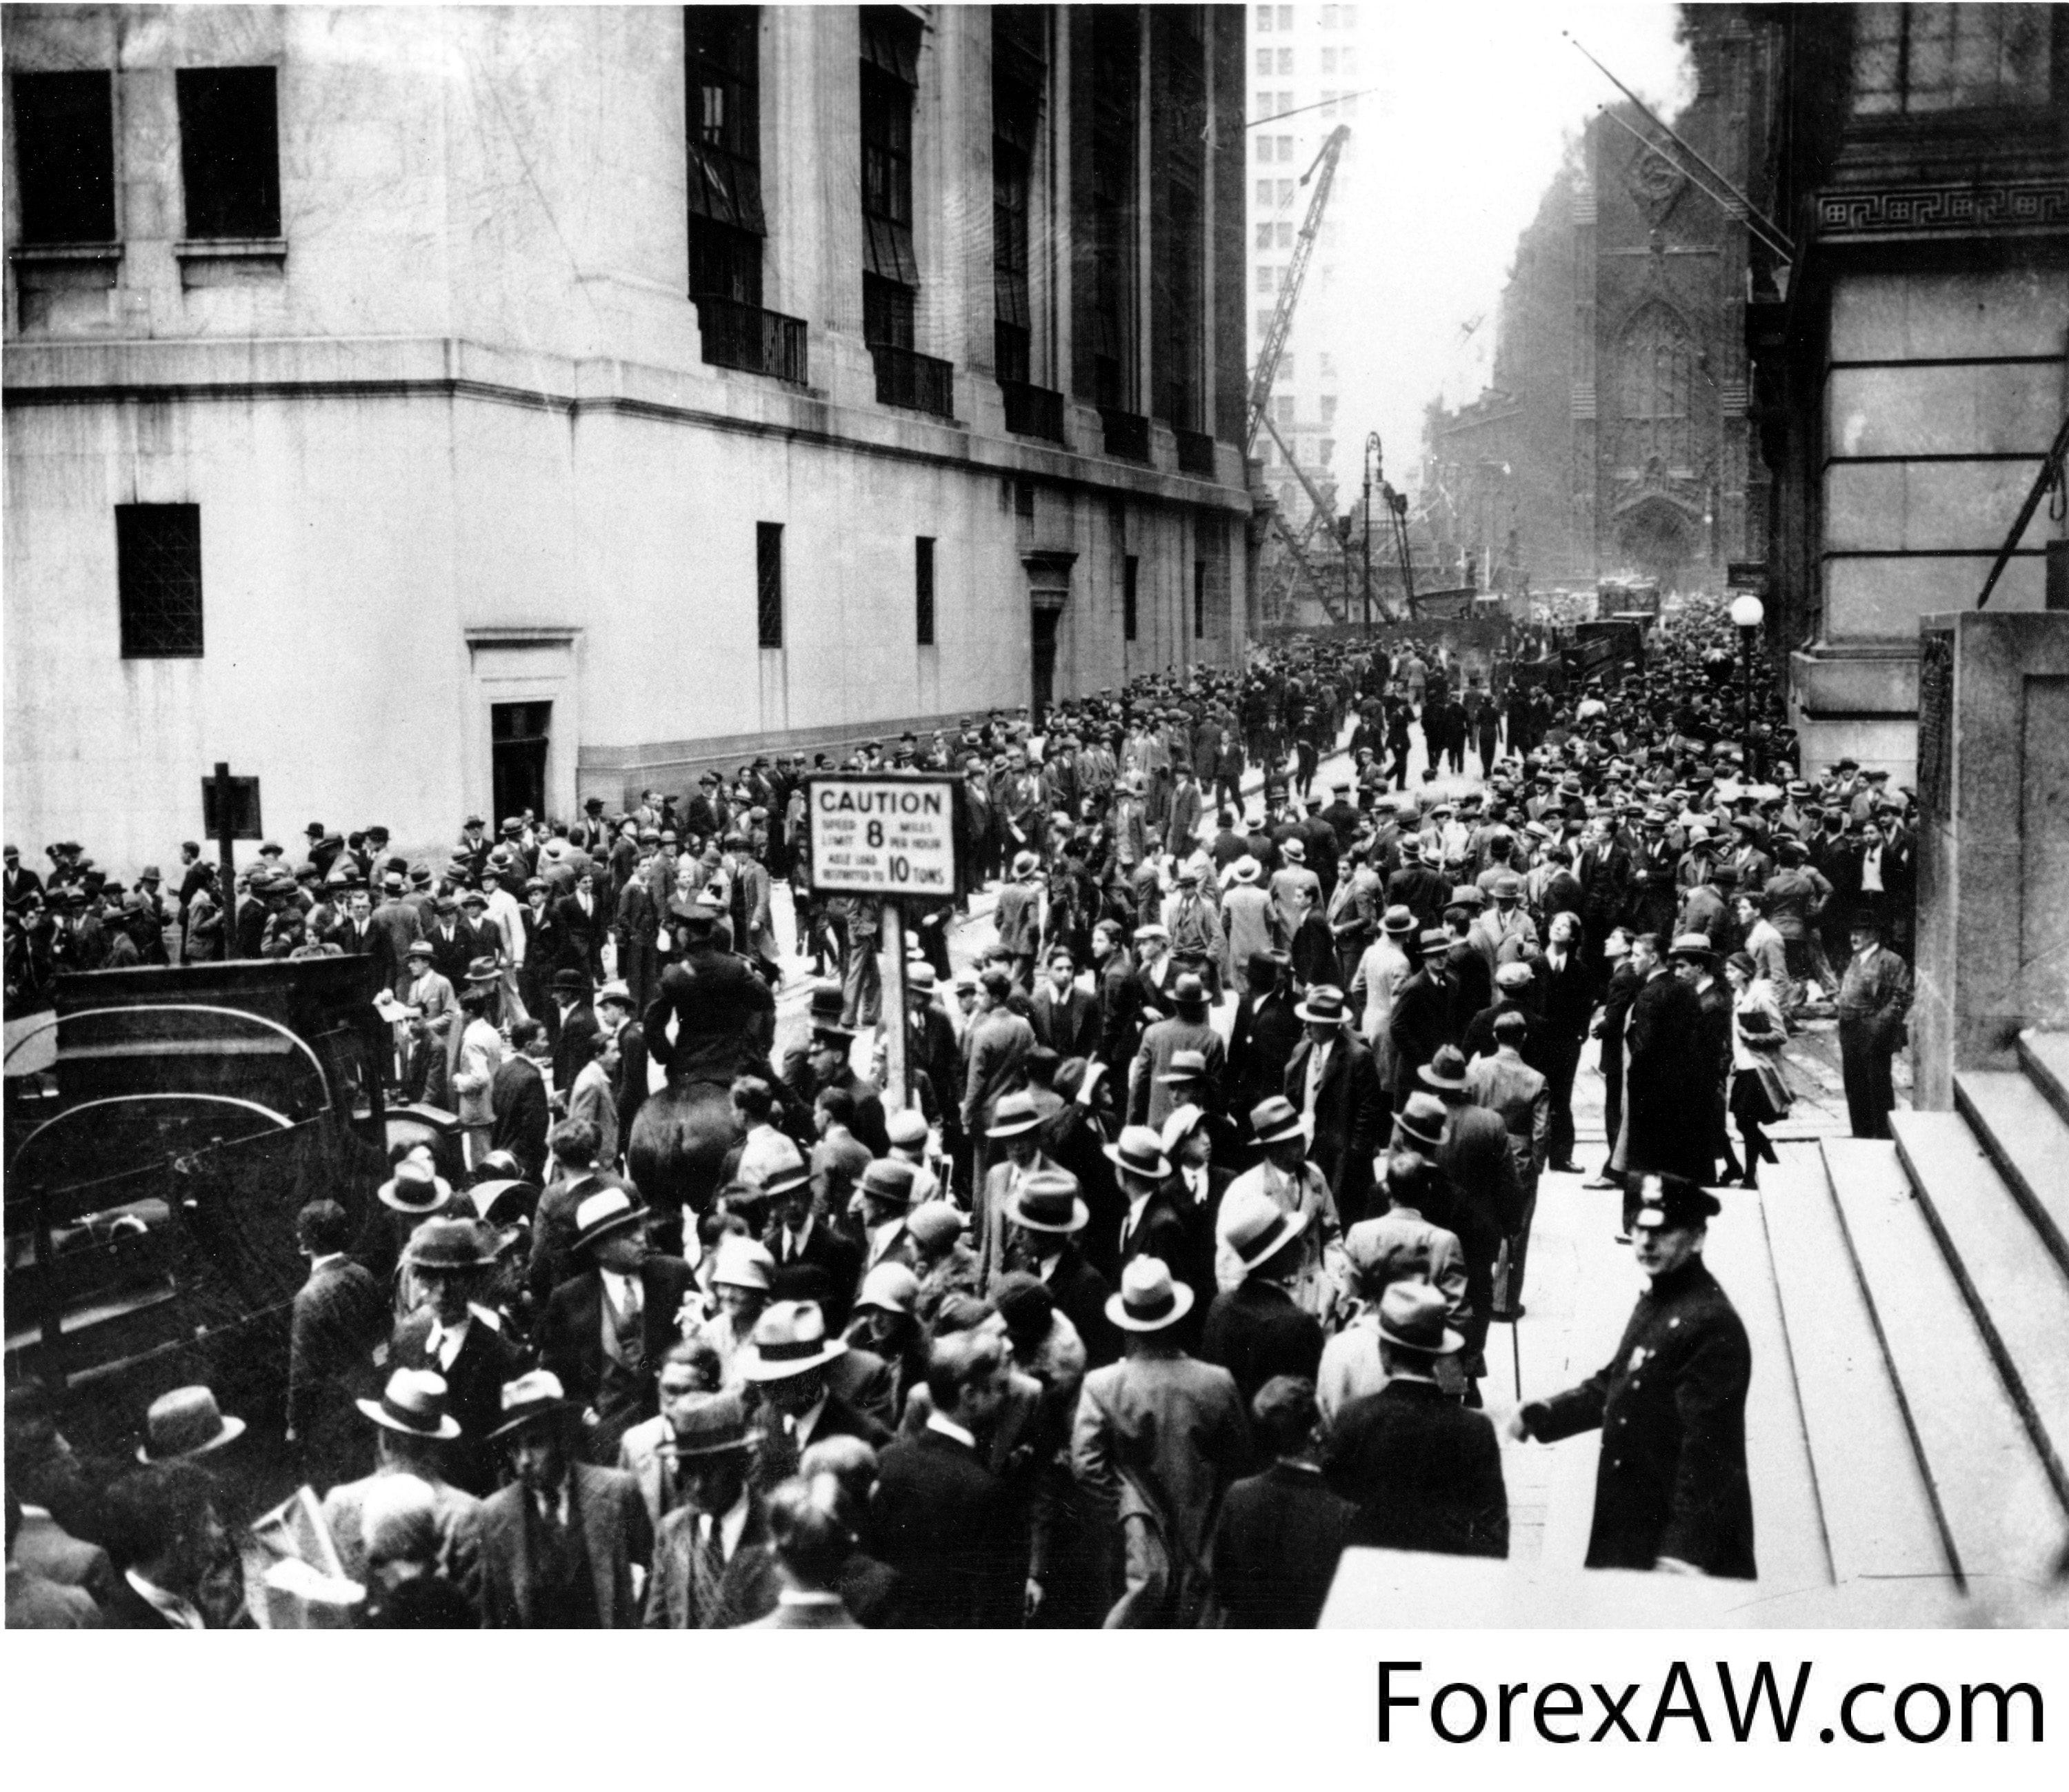 25 апреля 20 года. Великая депрессия 1929-1933. Уолл стрит 1929. Кризис в США 1929-1933. Великая депрессия в США 1929-1933 гг.